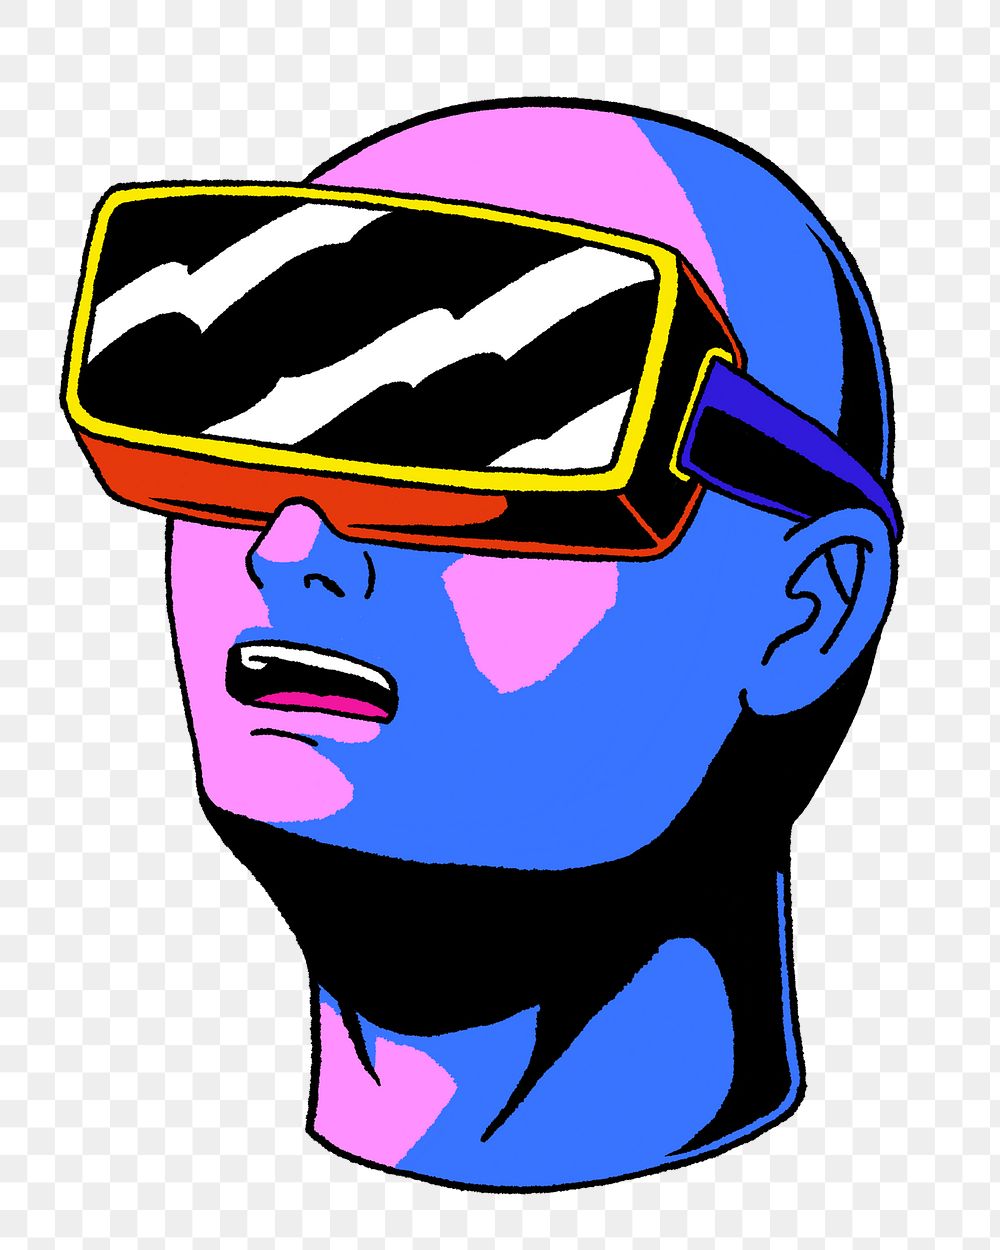 Png vibrant VR technology illustration, transparent background